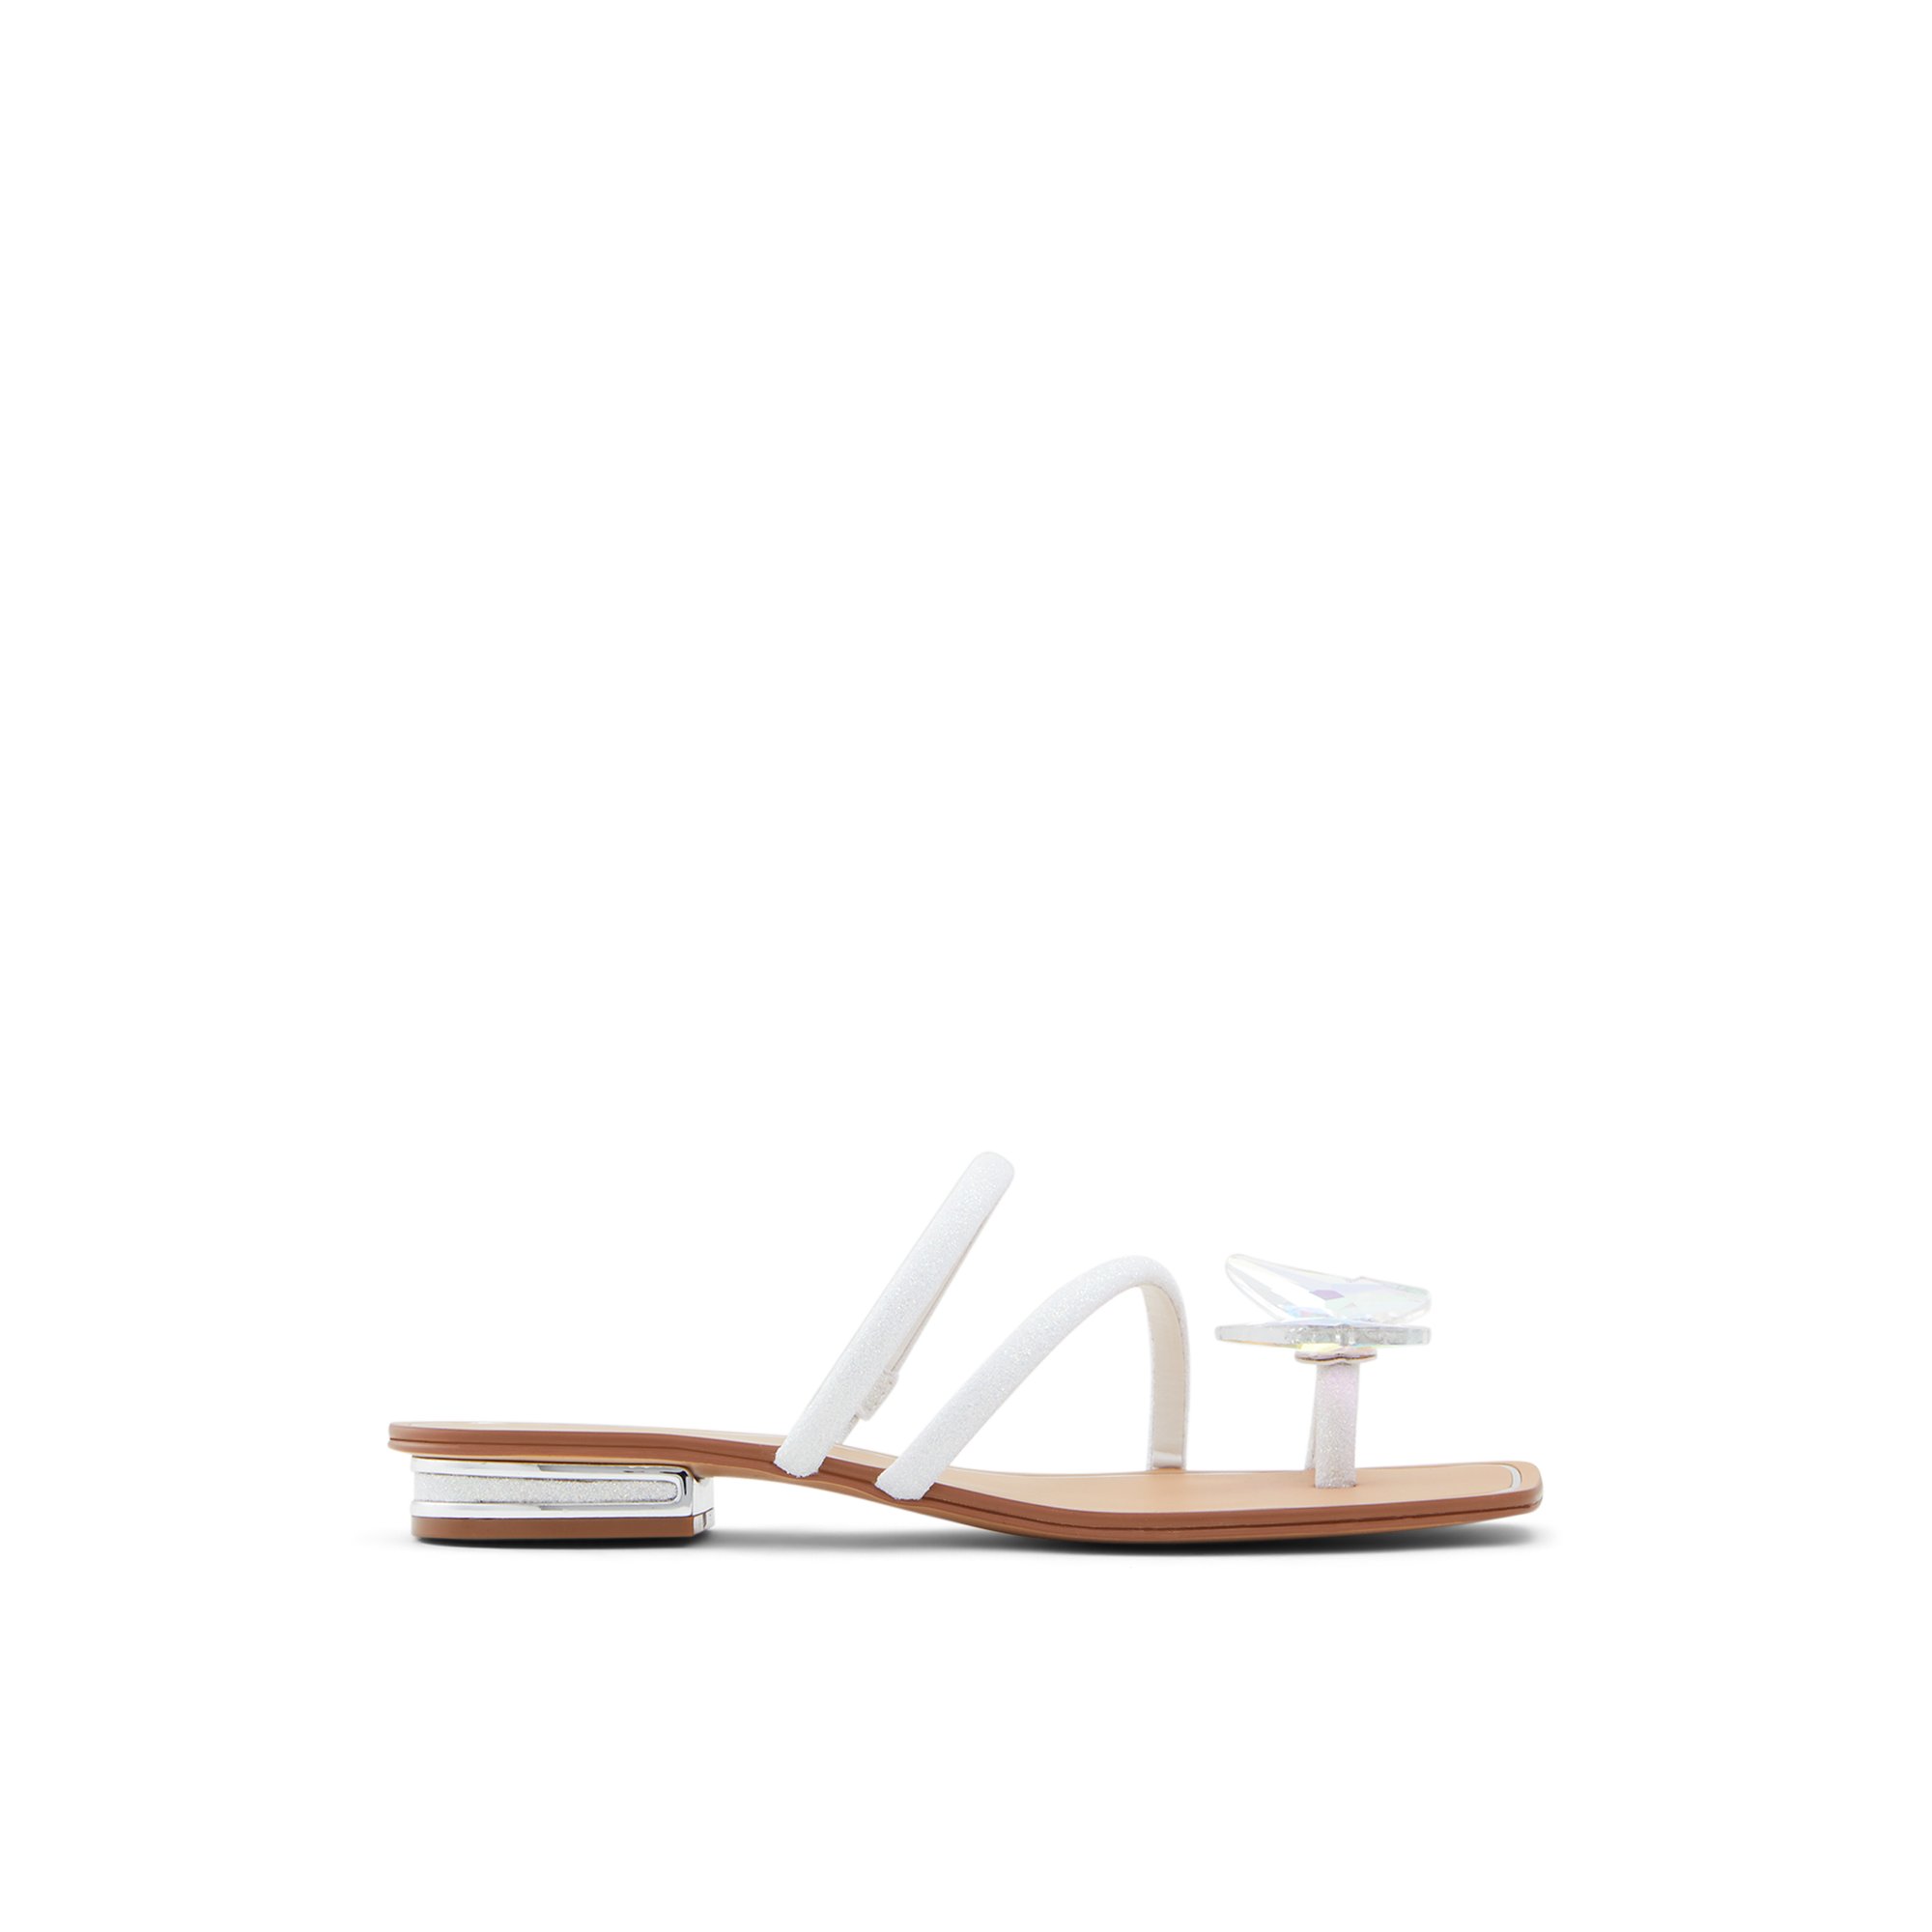 ALDO Garberia - Women's Flat Sandals - Metallic